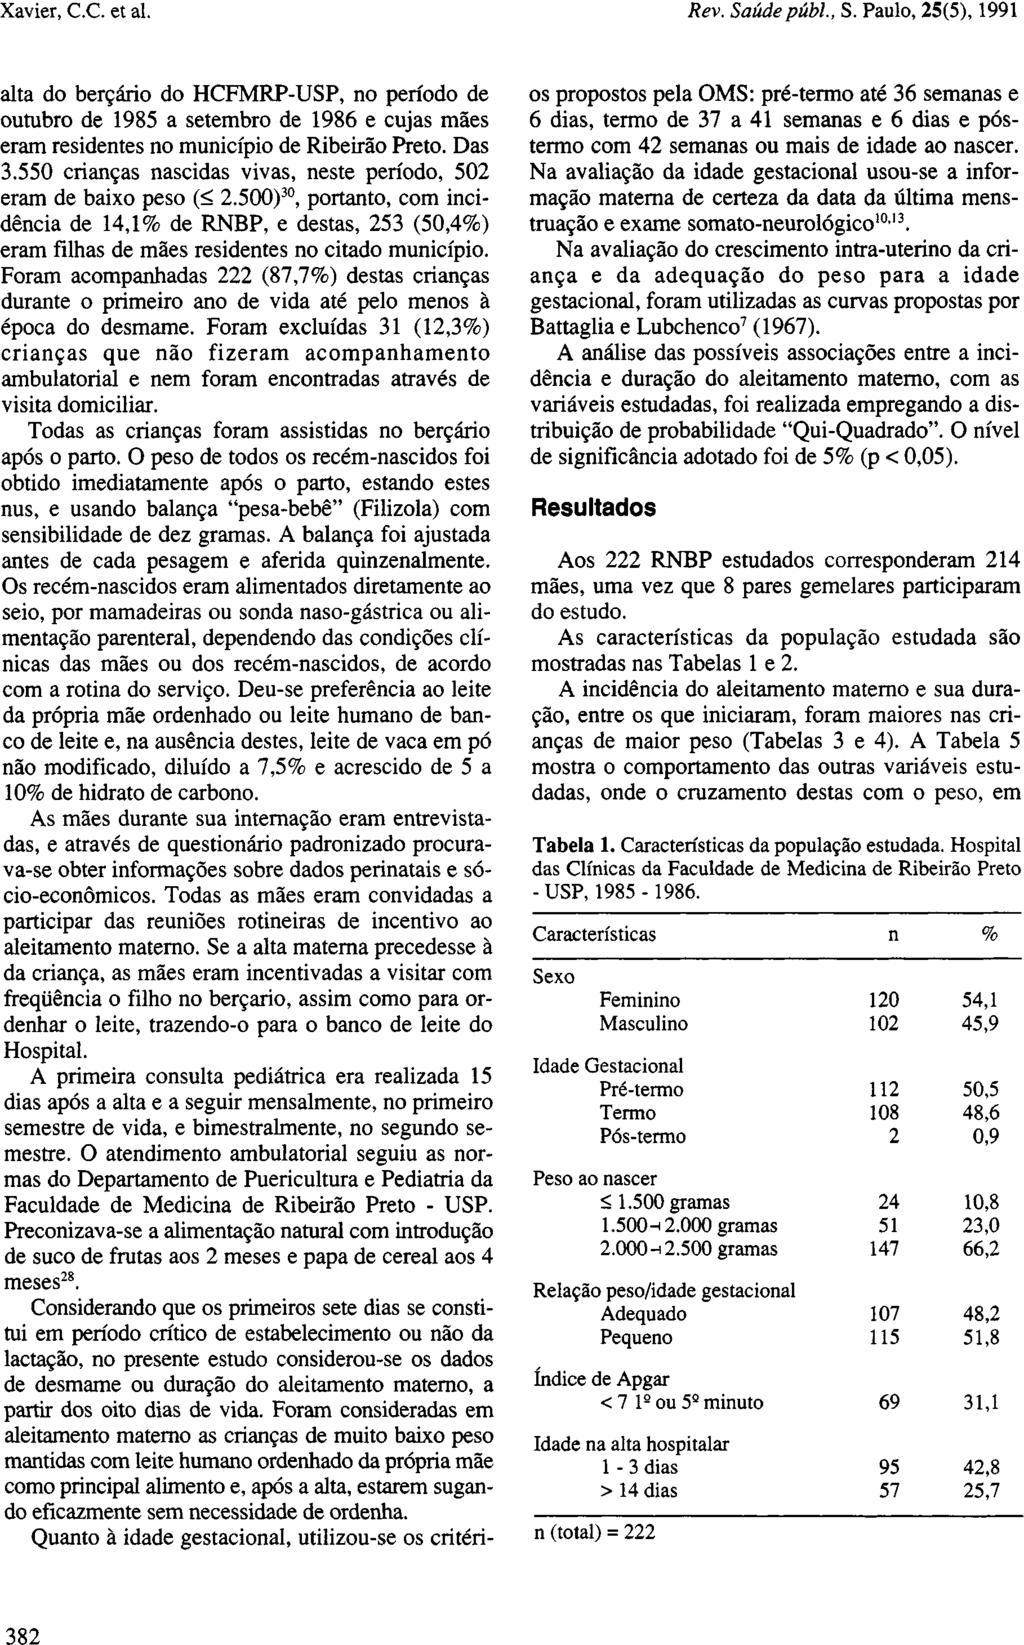 alta do berçário do HCFMRP-USP, no período de outubro de 1985 a setembro de 1986 e cujas mães eram residentes no município de Ribeirão Preto. Das 3.